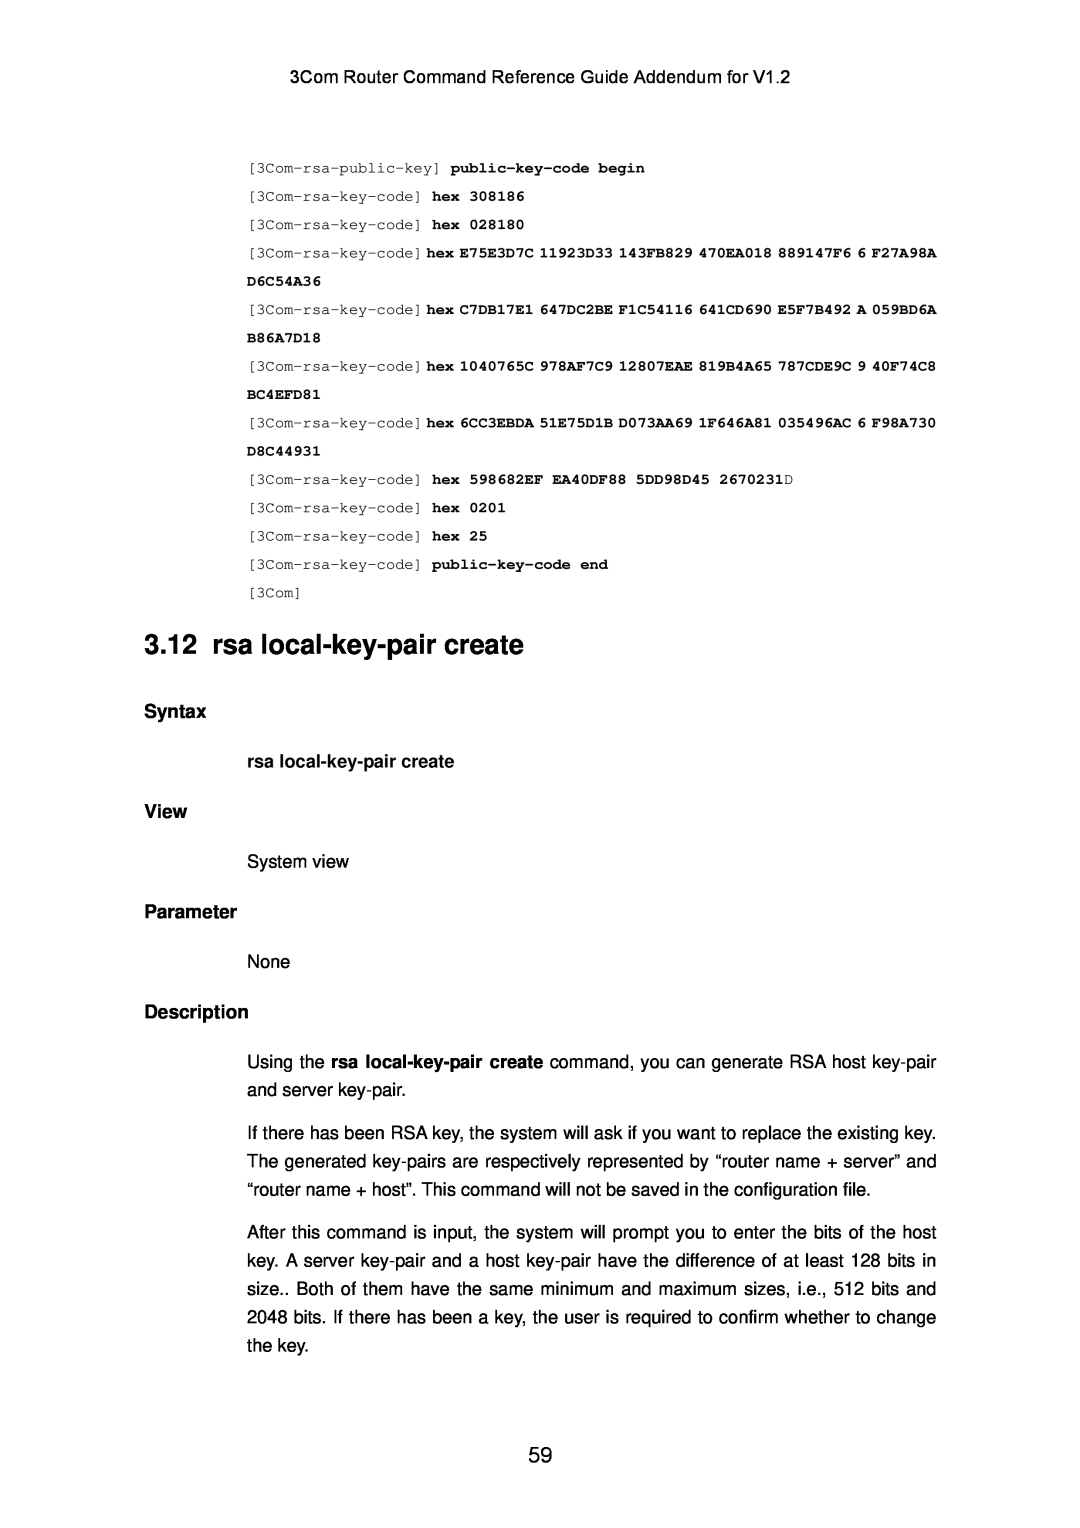 3Com 10014302 manual rsa local-key-pair create, Syntax, View, Parameter, Description 